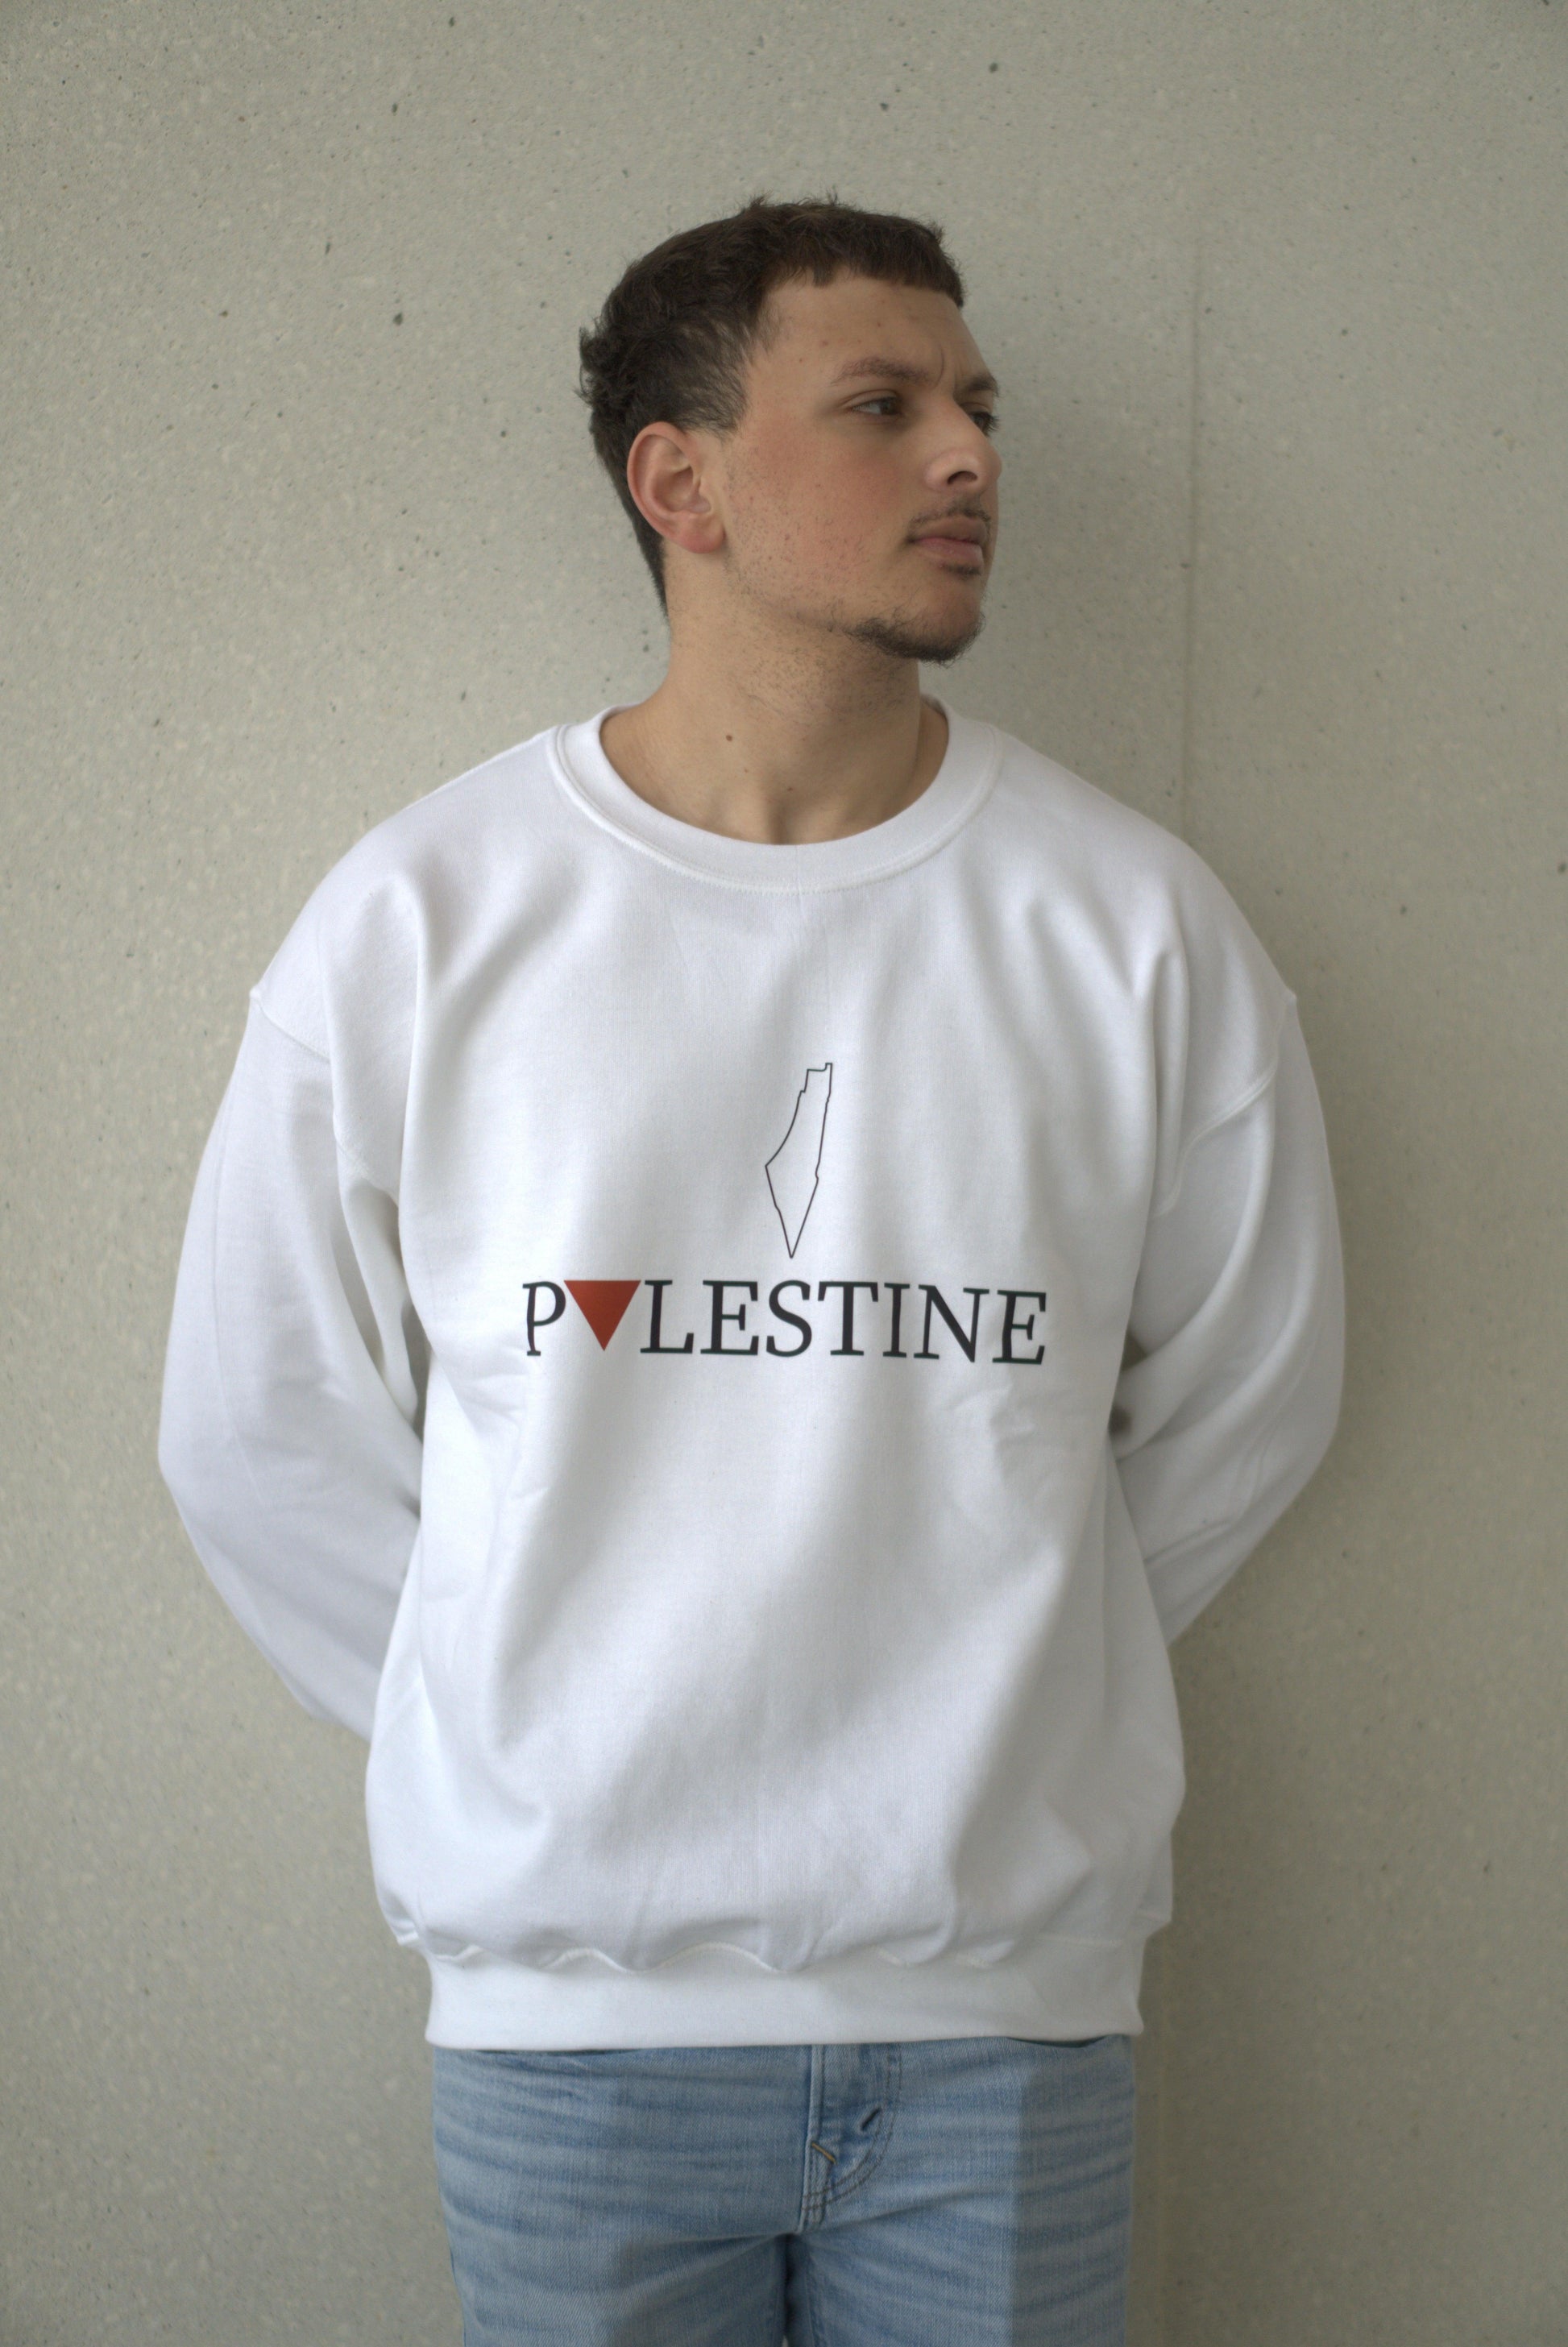 Palestine Sweatshirt - The Olive Oath